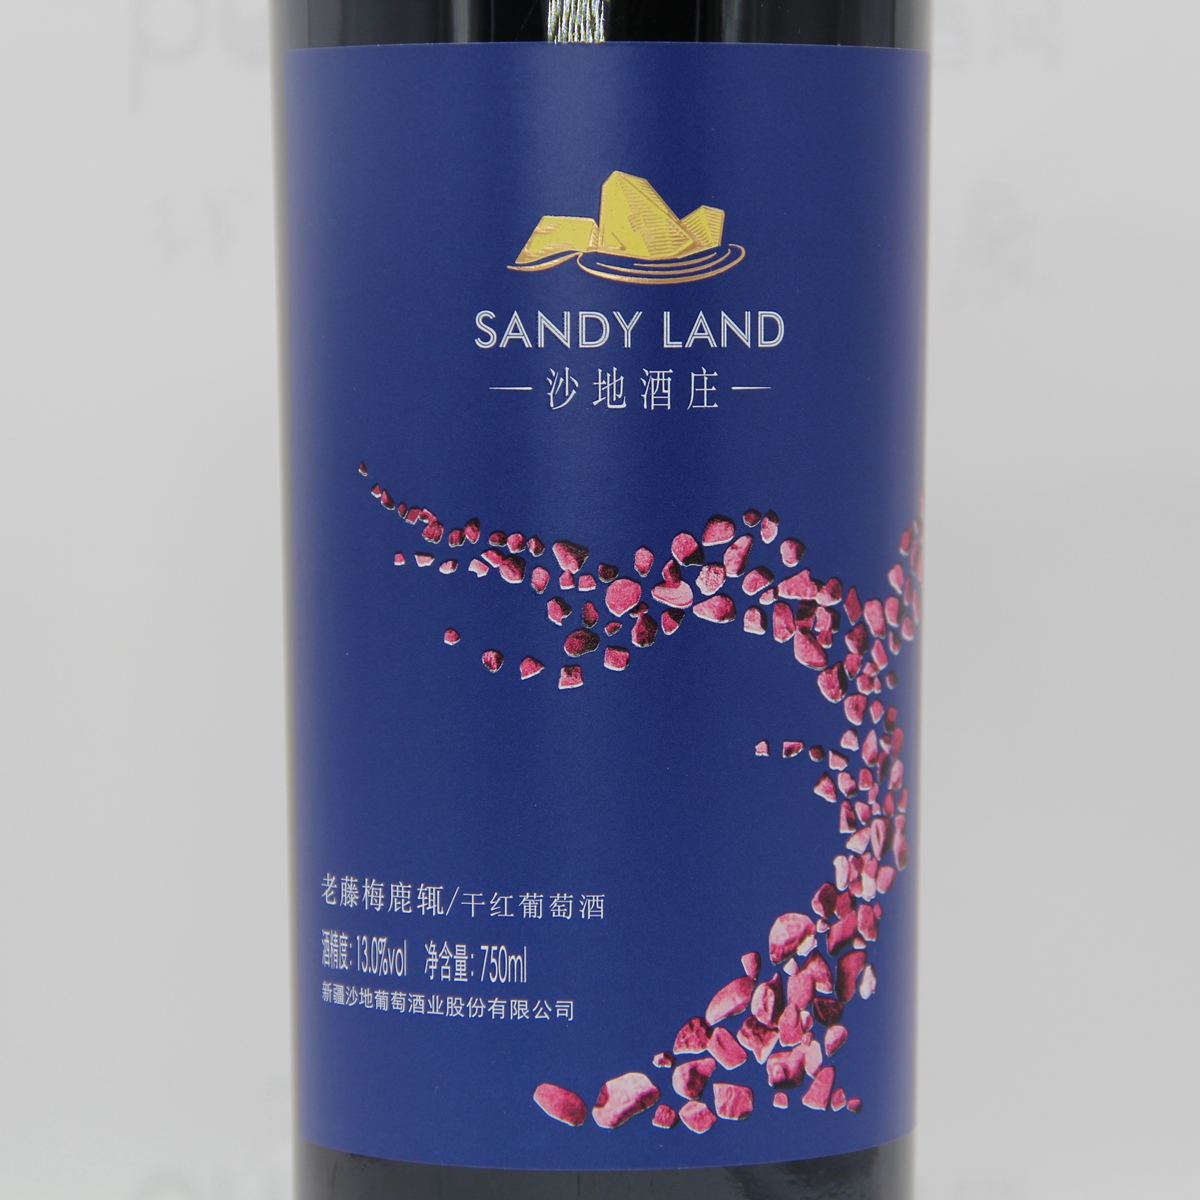 中国新疆产区沙地酒庄 梅鹿辄merlot老藤干红葡萄酒